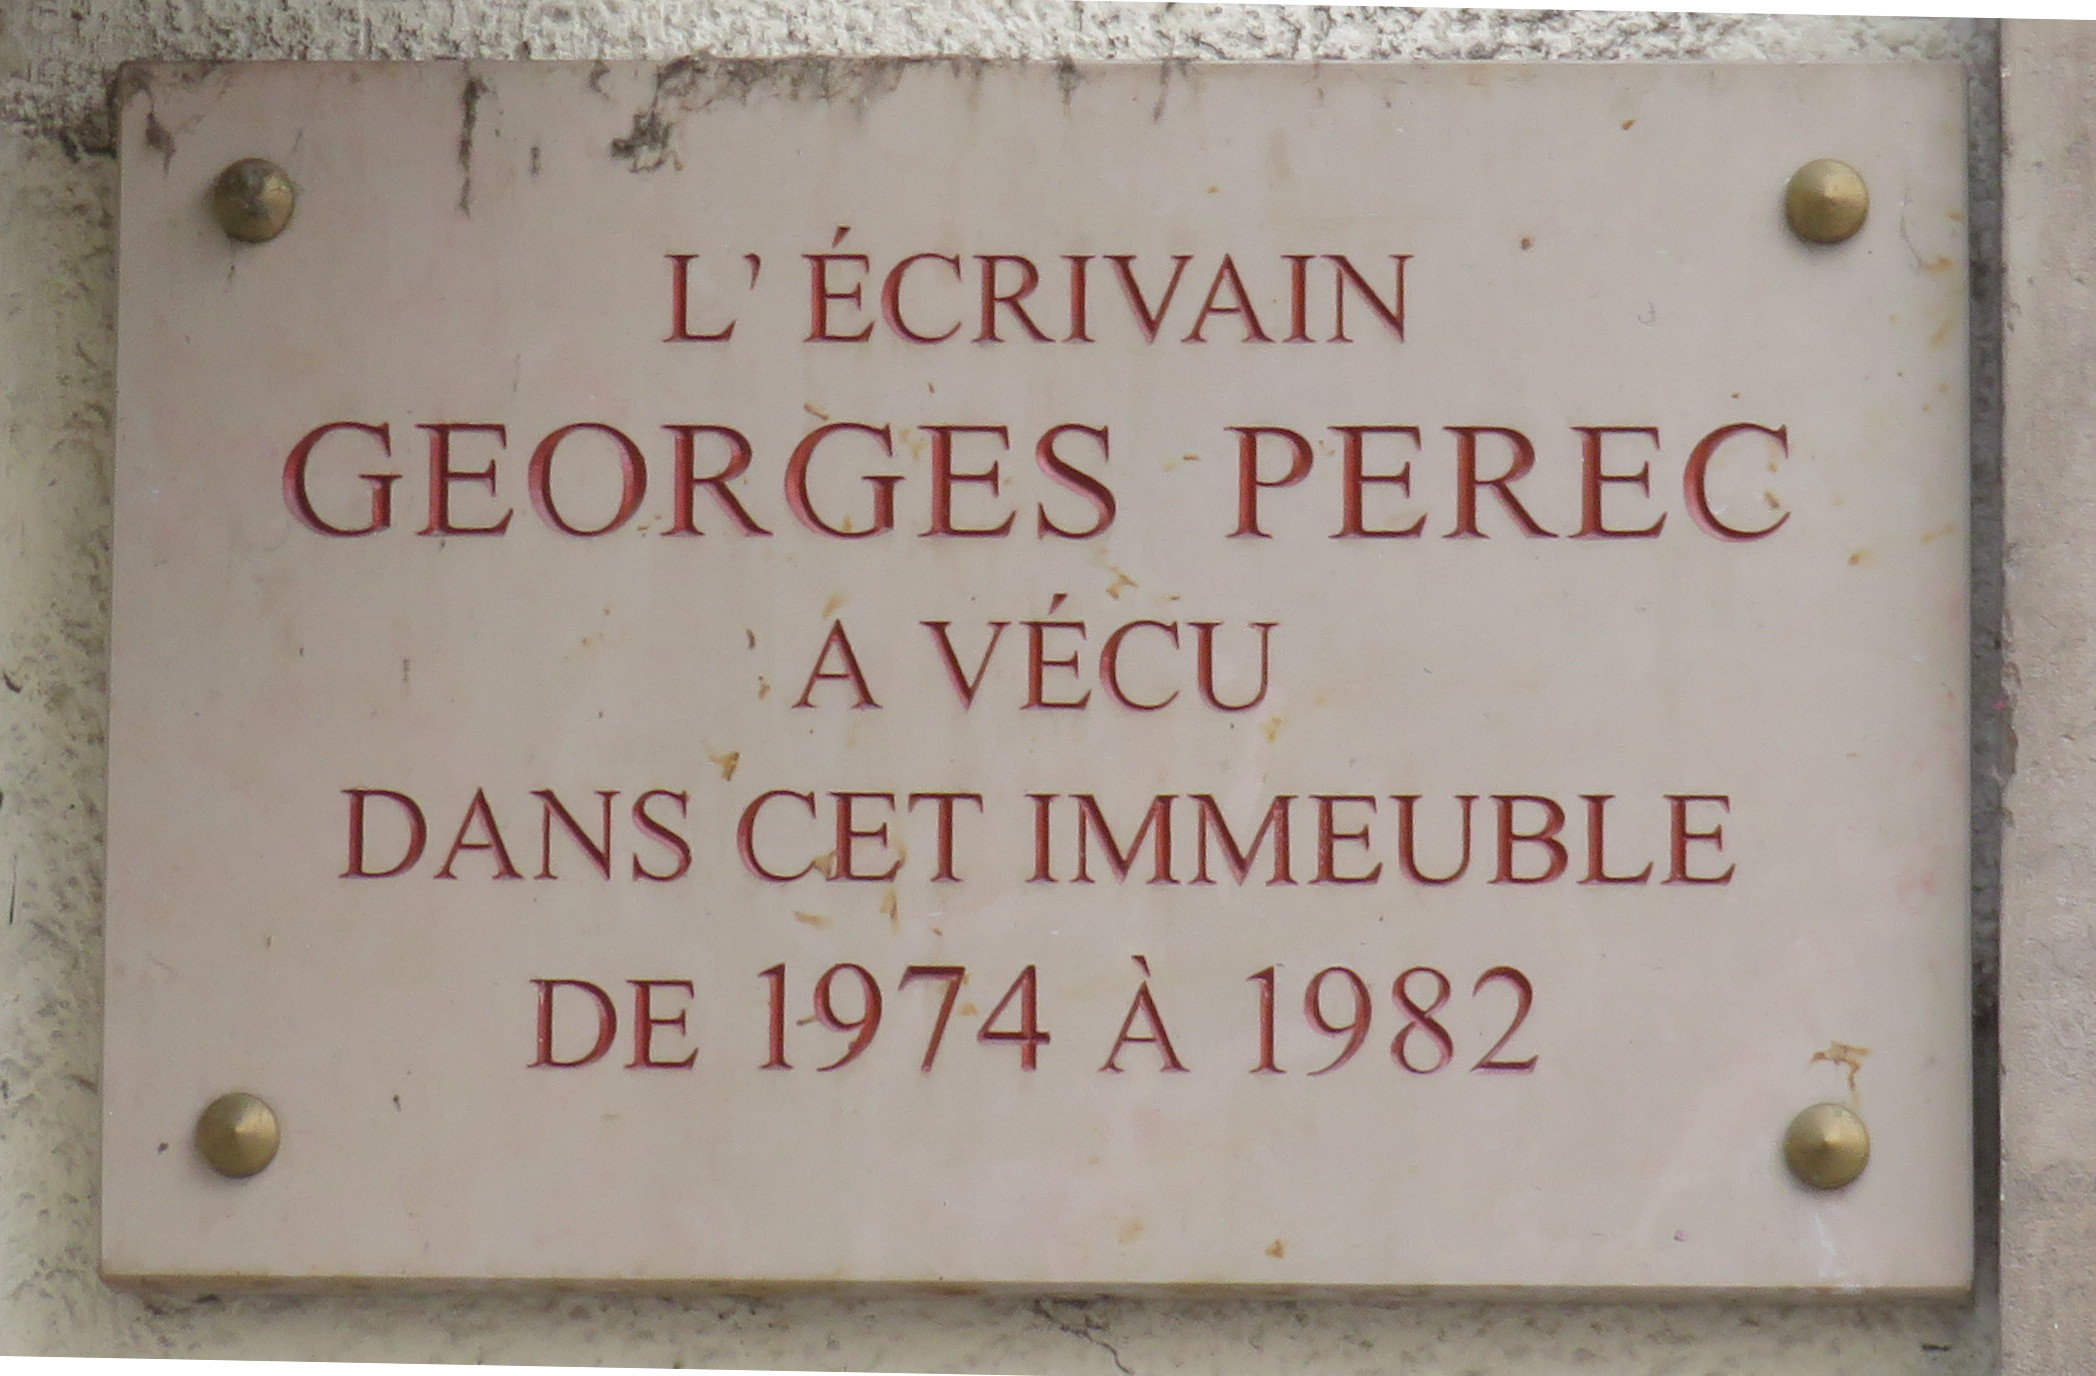 La g�ographie sensible de Georges Perec